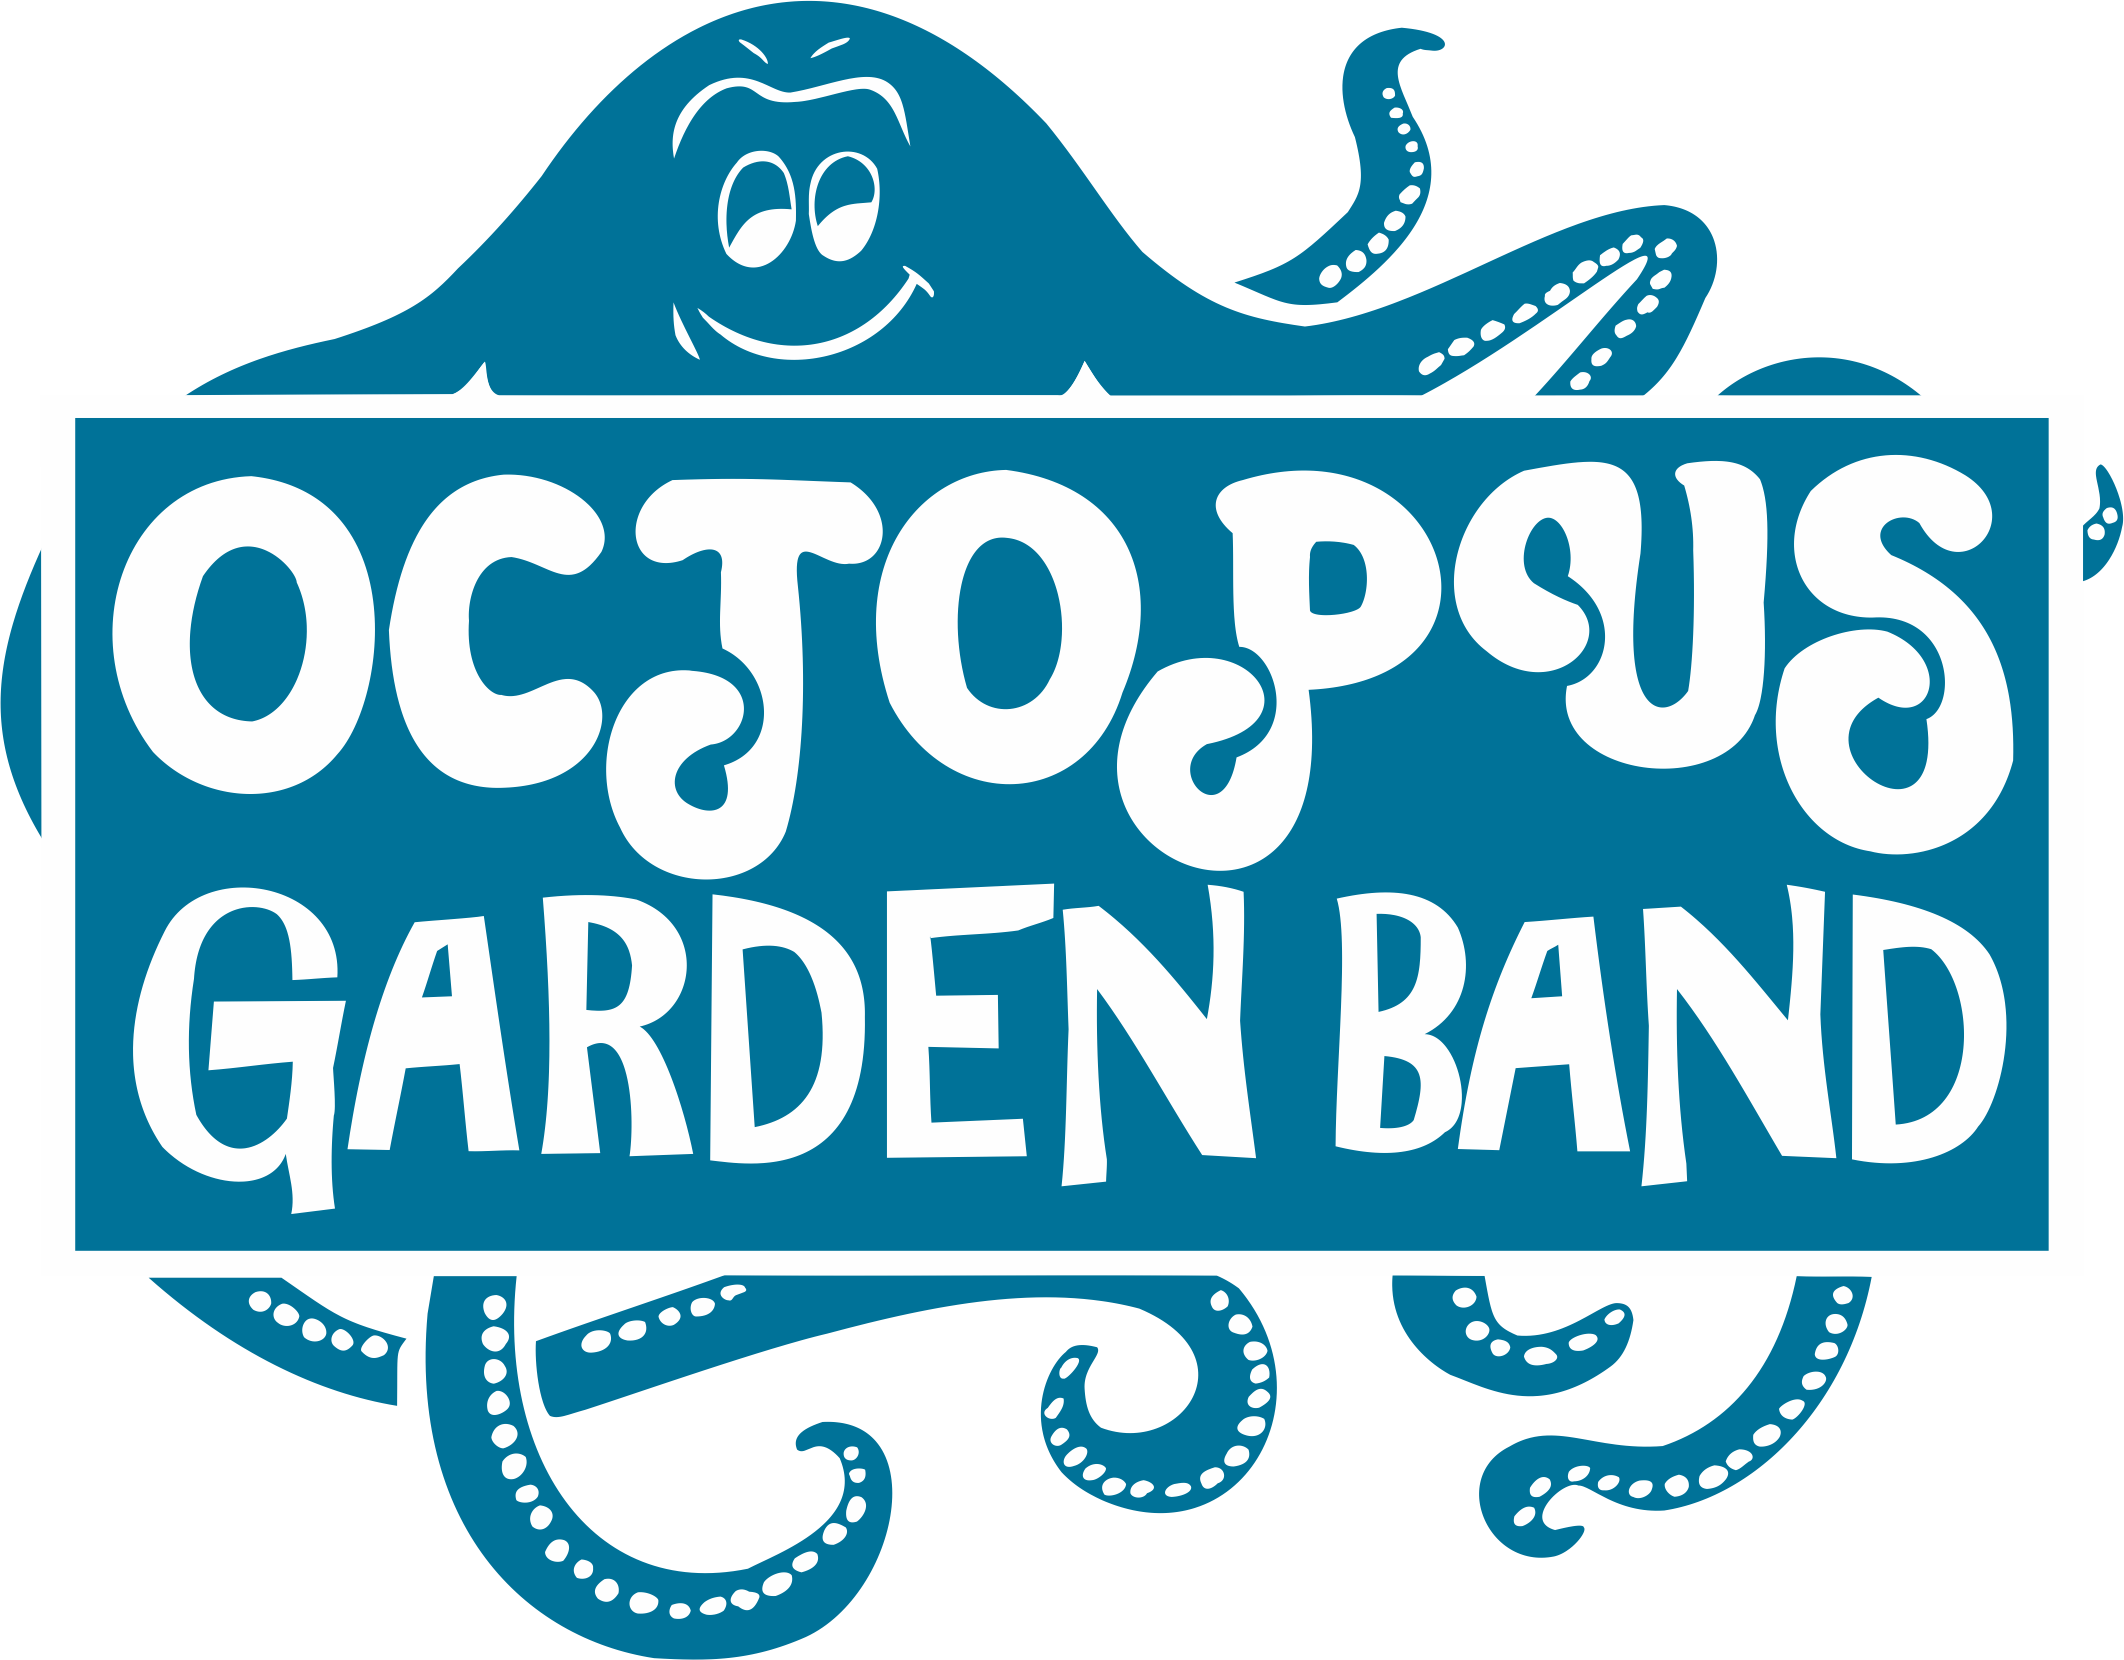 Octopus Garden Band